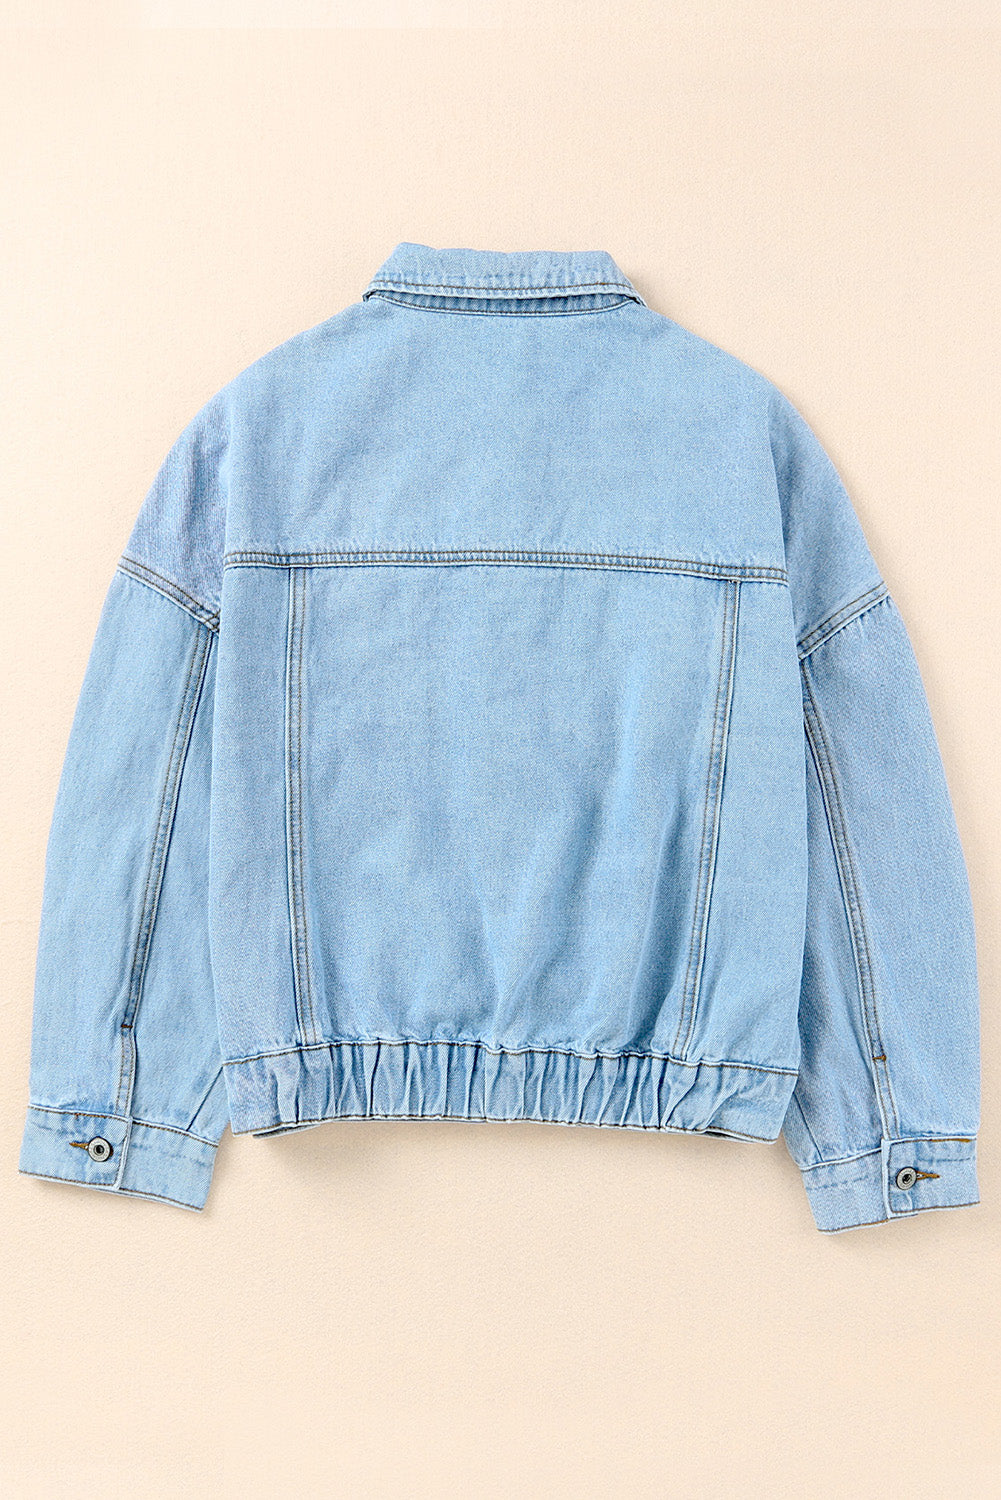 Sky Blue Acid Washed Pockets Buttoned Denim Jacket